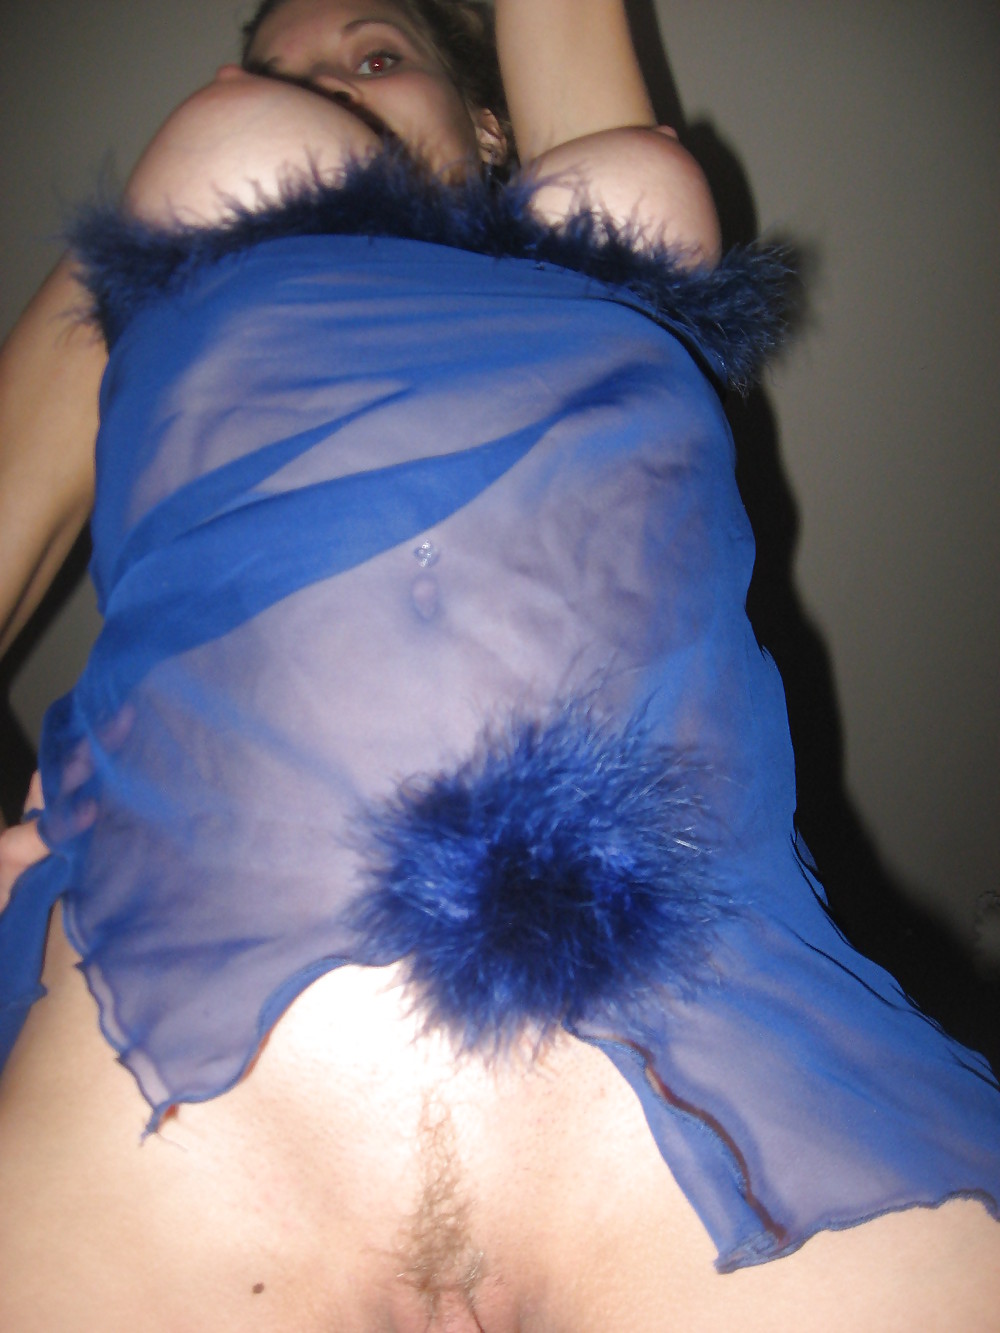 Соска в синем пеньюаре у себя дома светит вагиной 12 фотография